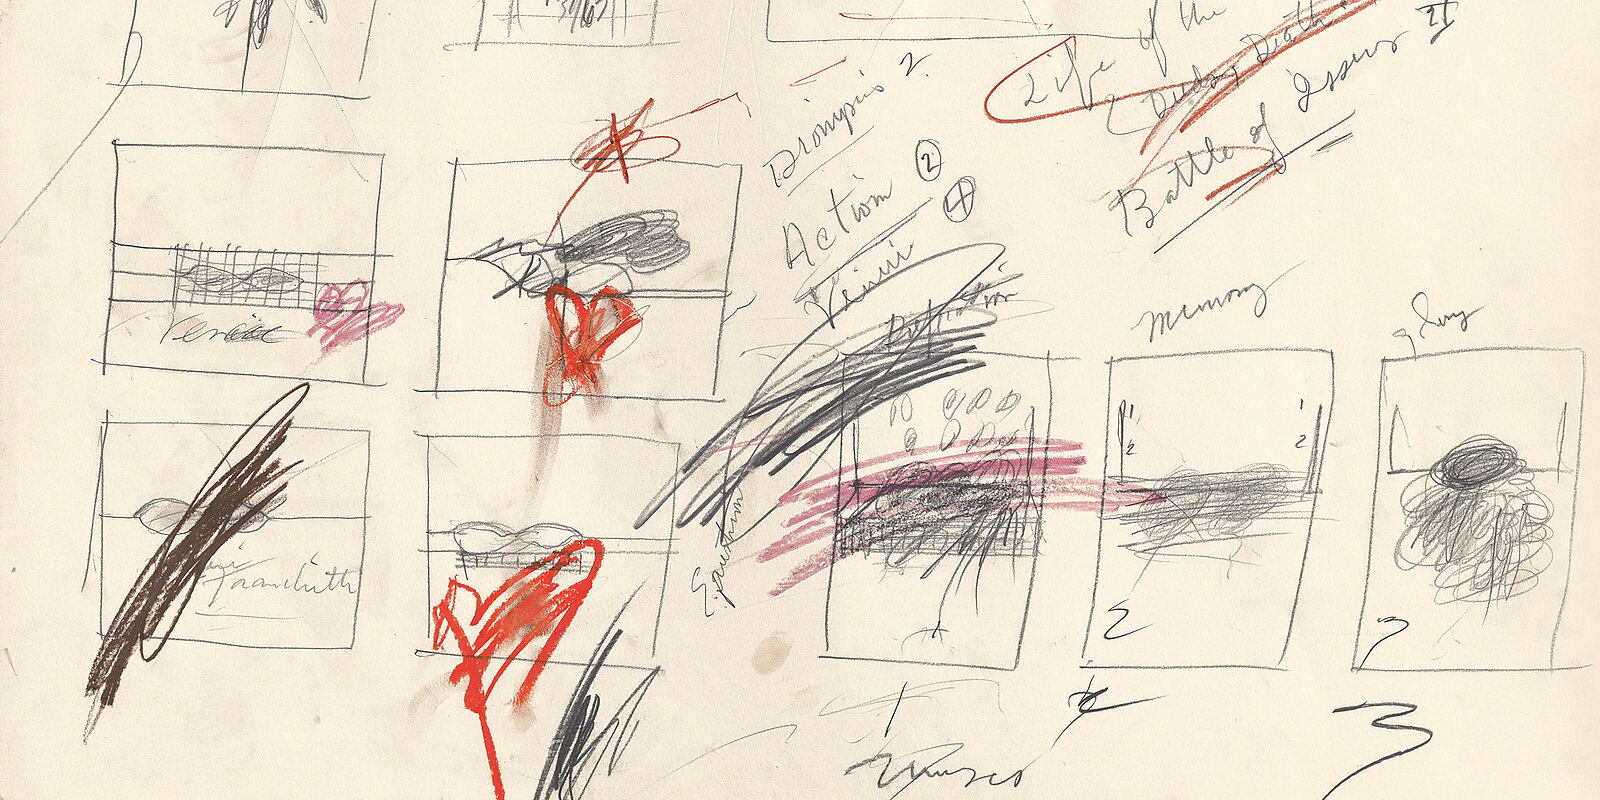 Detailansicht, Cy Twombly, Ohne Titel (Study of Painting), 1963 (Rome), Graphit und Ölkreide auf Papier